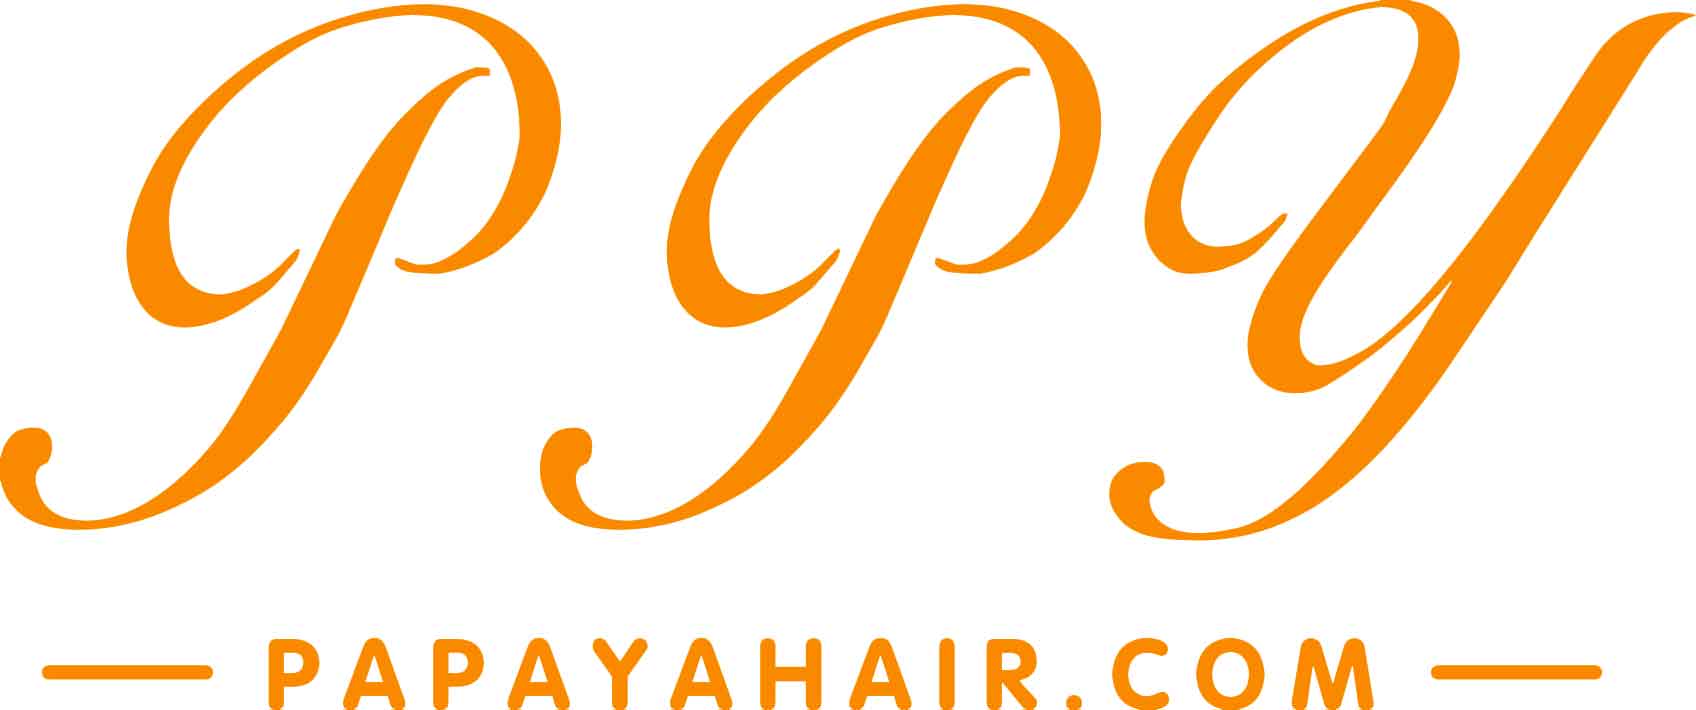 www.papayahair.com